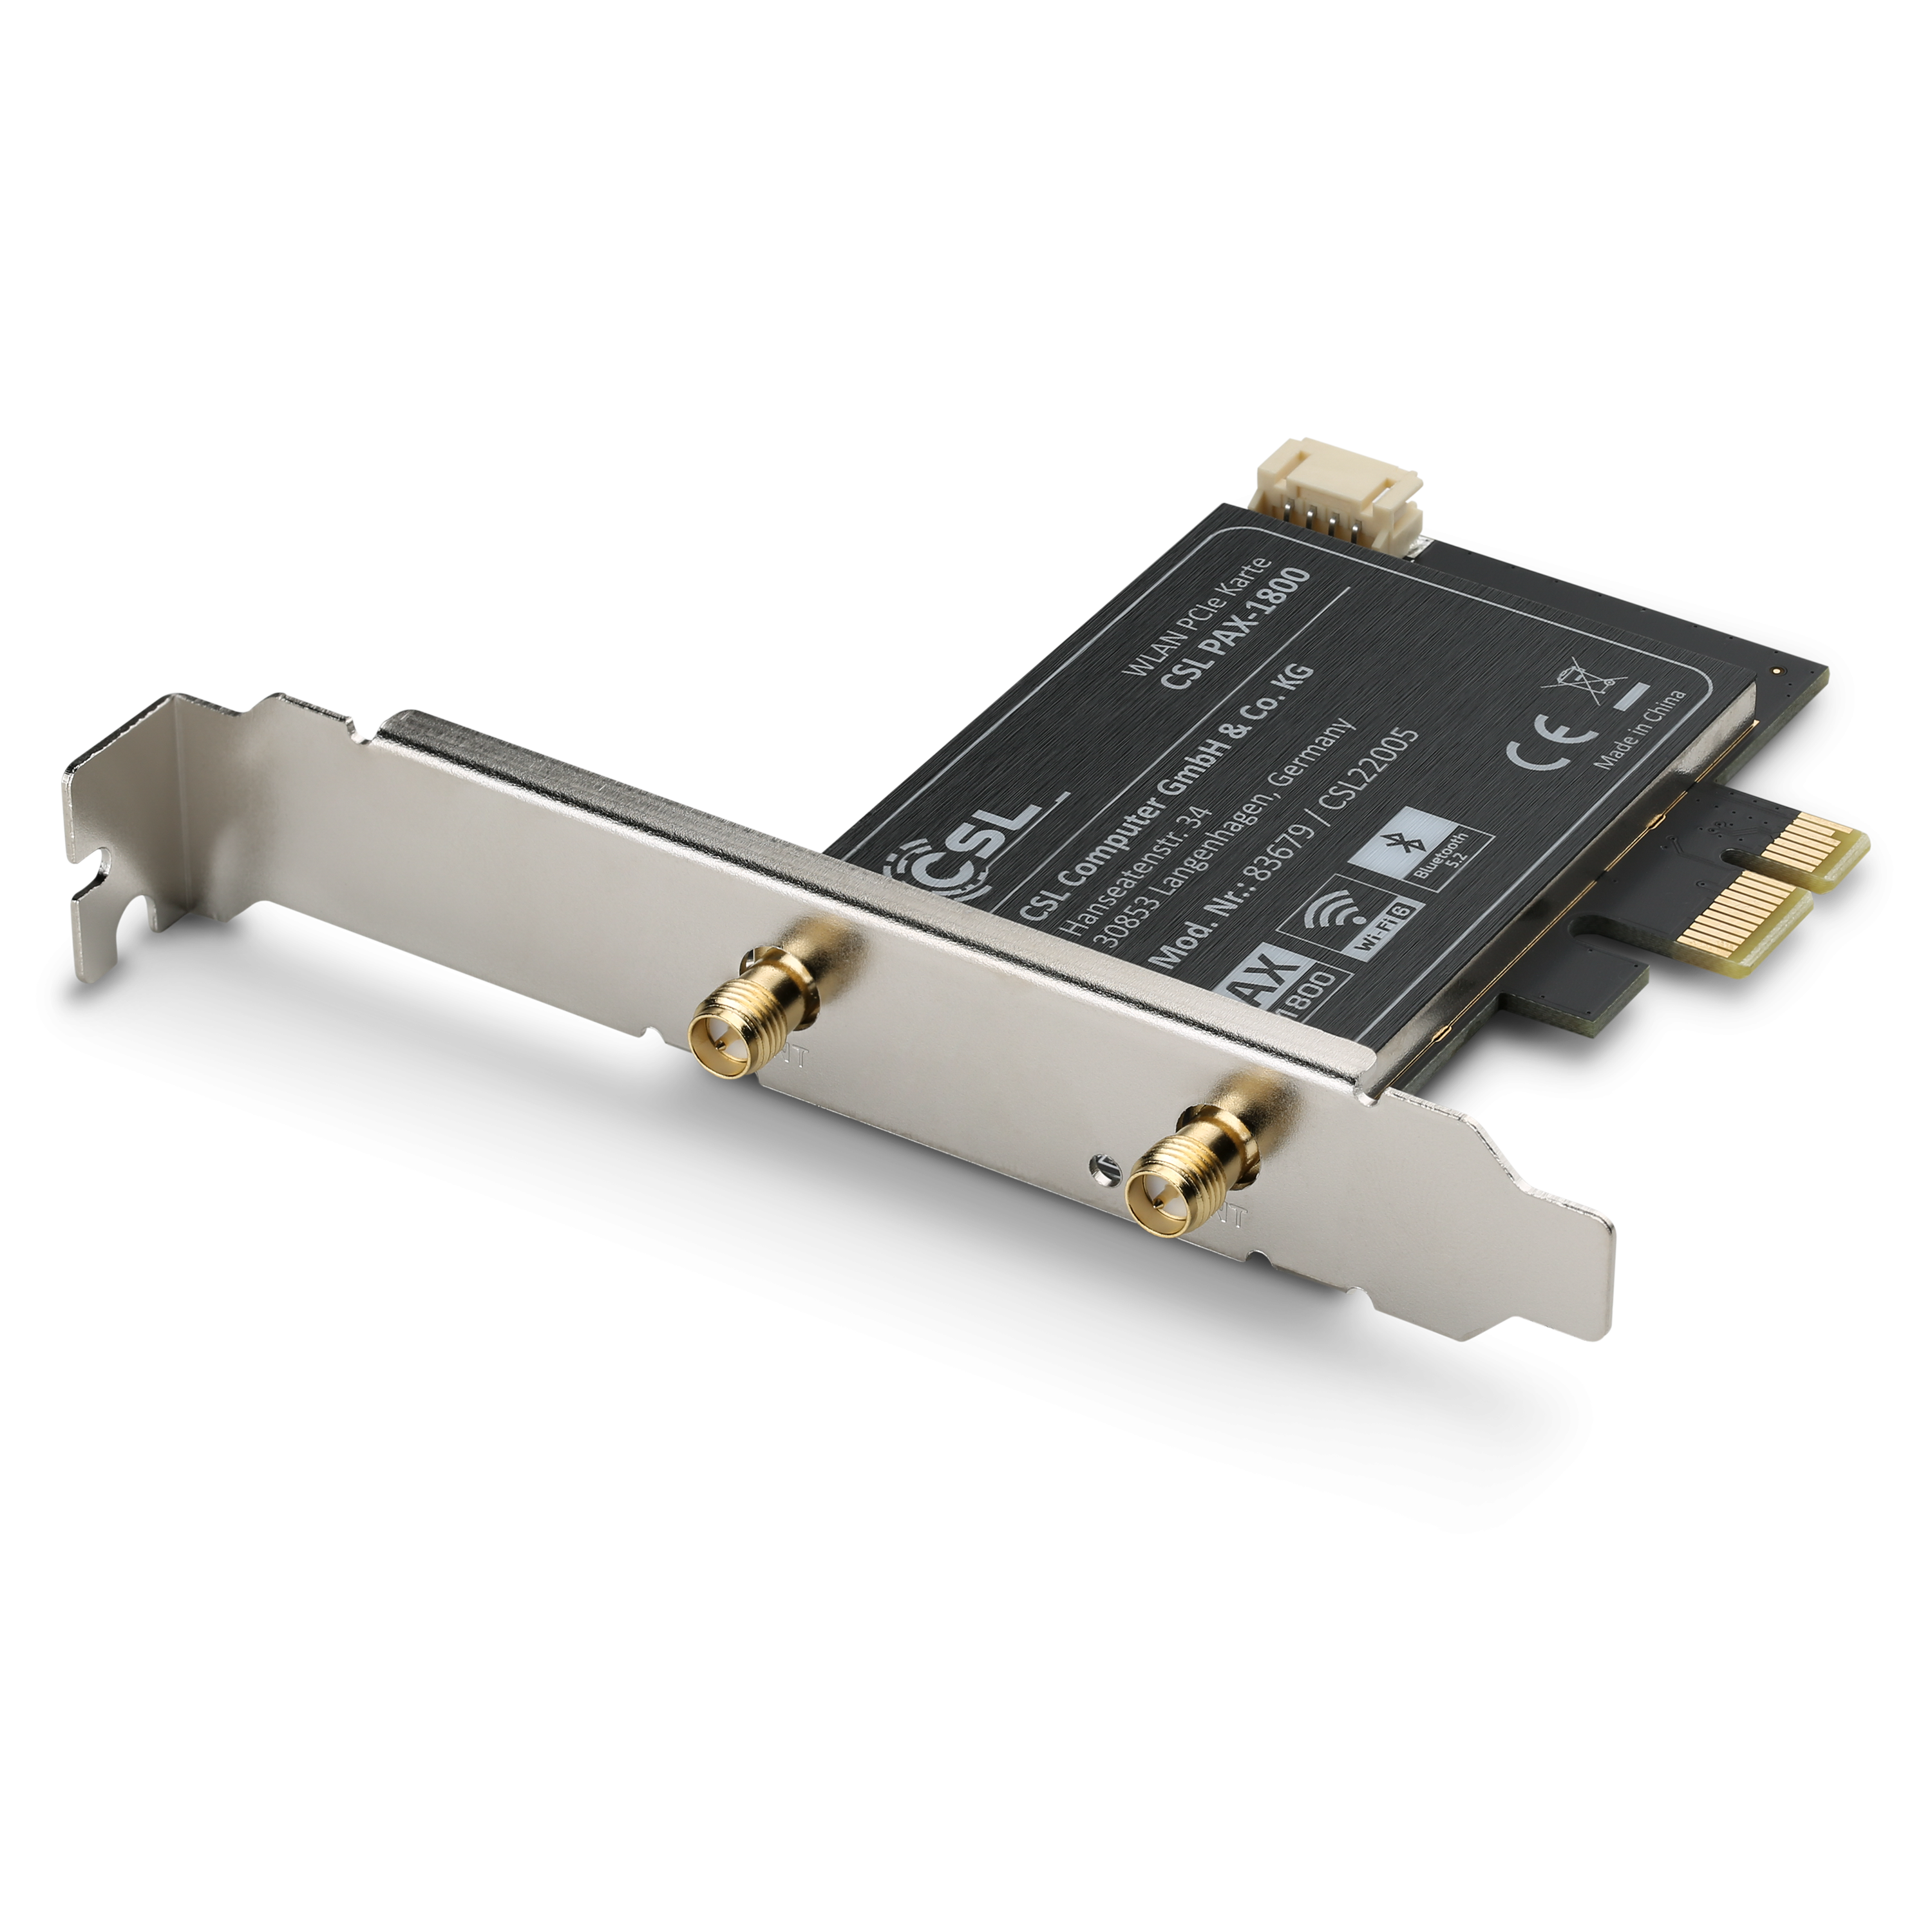 Clé USB WiFi 867 Mbit/s (300 Mbit/s @ 2,4 GHz) - AVM Fritz ! AC 860